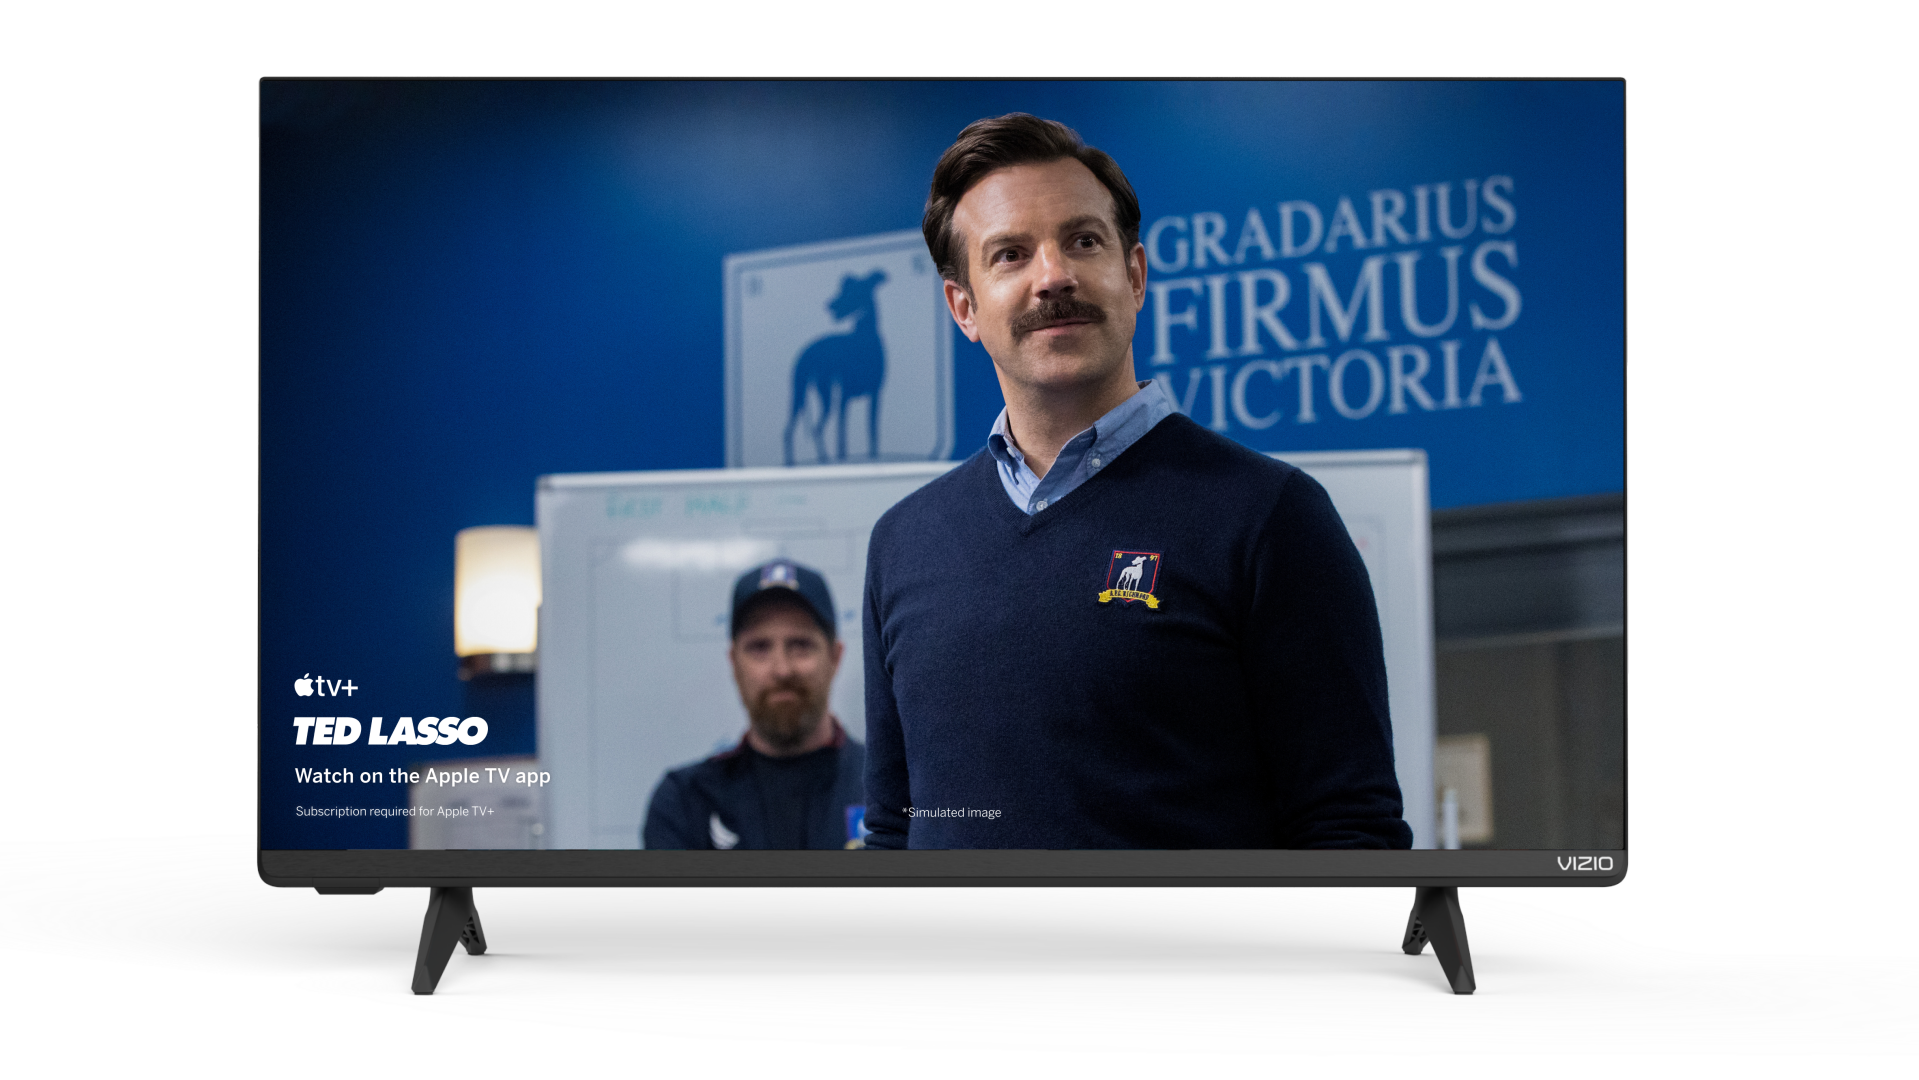 SMART TECHNOLOGY TV LED - 40 Pouces-Full HD - Décodeur Intégré